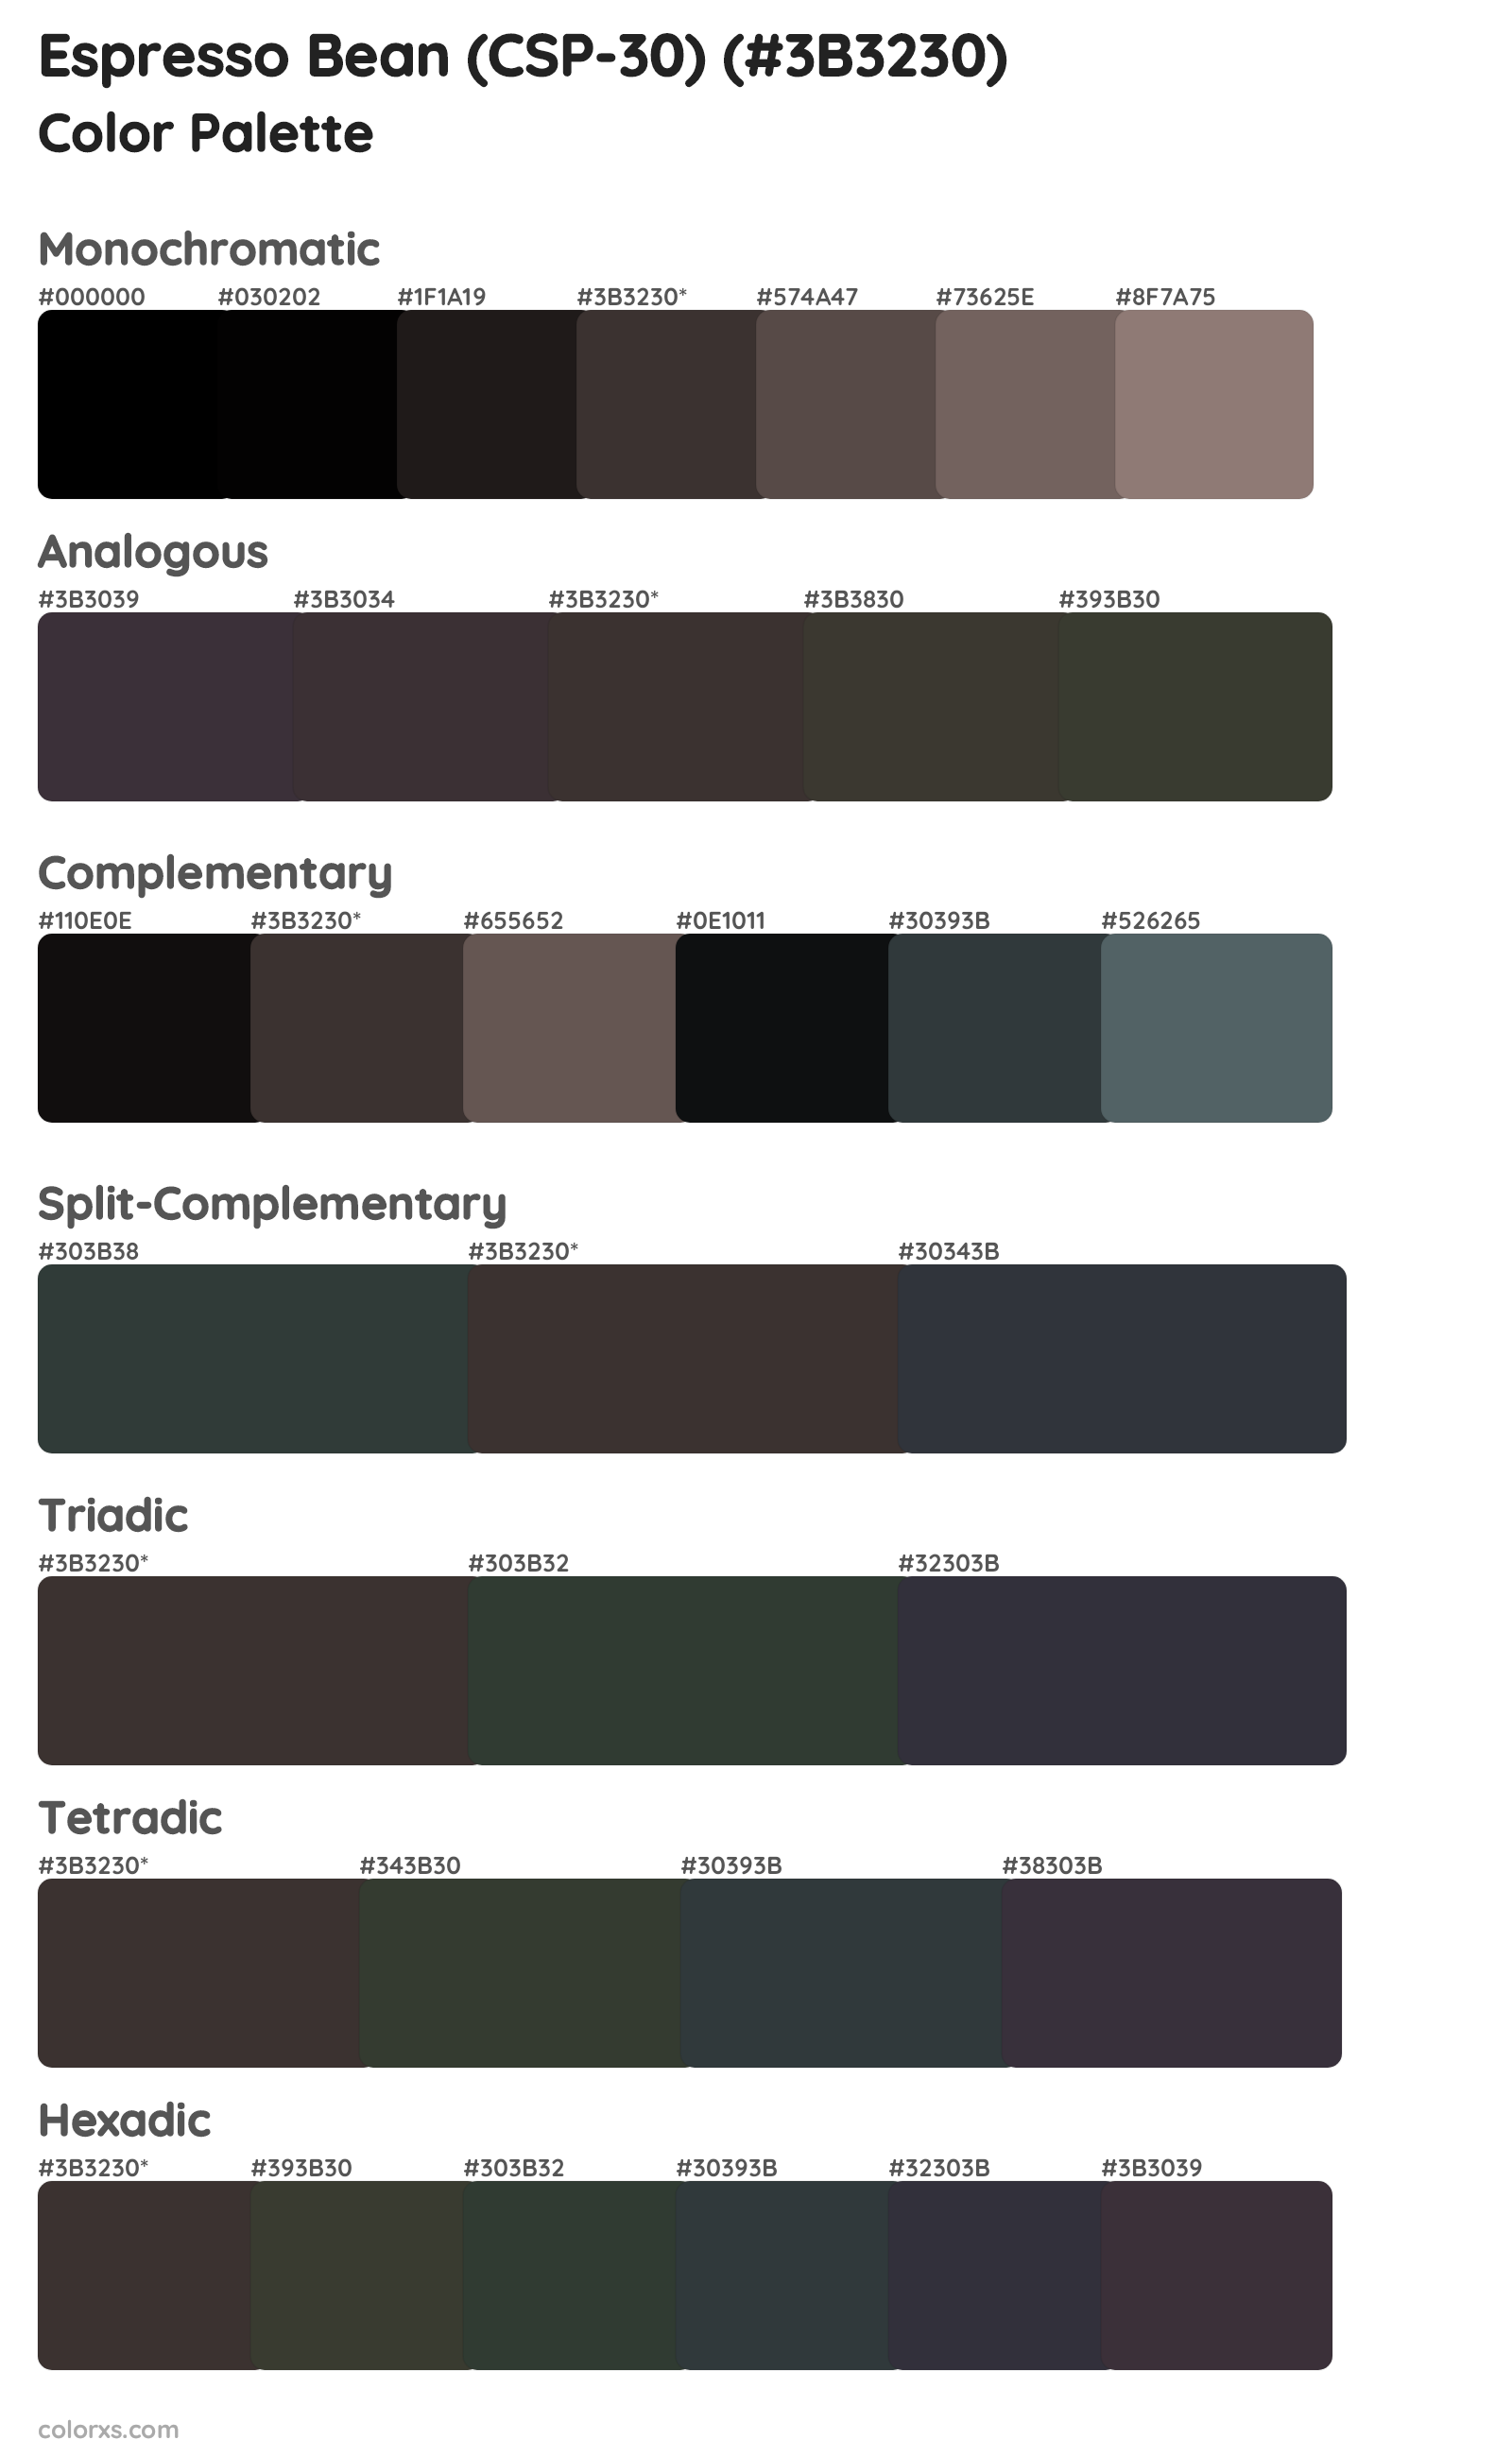 Espresso Bean (CSP-30) Color Scheme Palettes